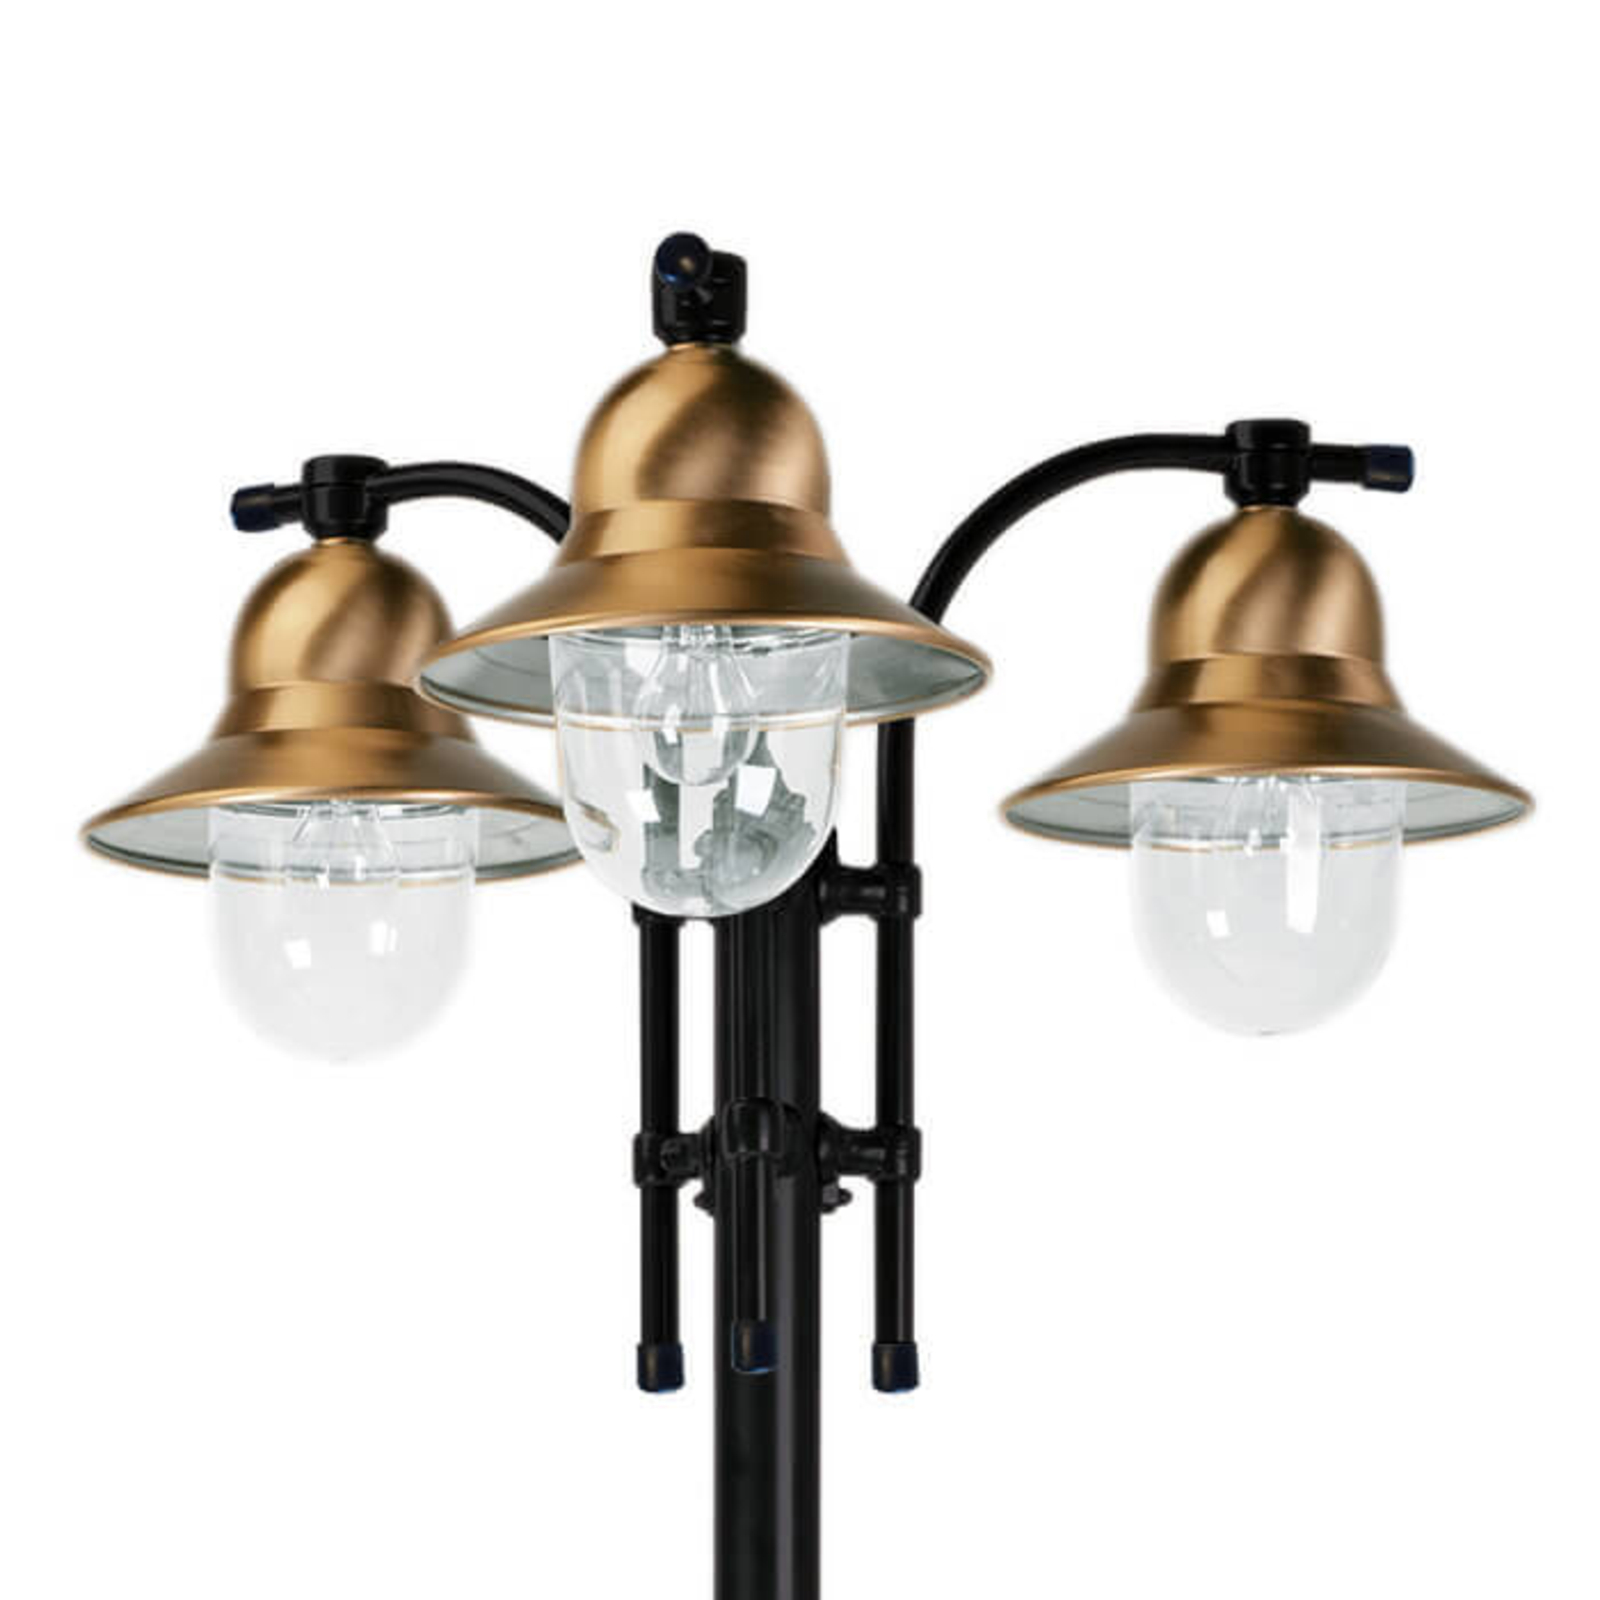 3-lámpás oszloplámpa Toscane, fekete